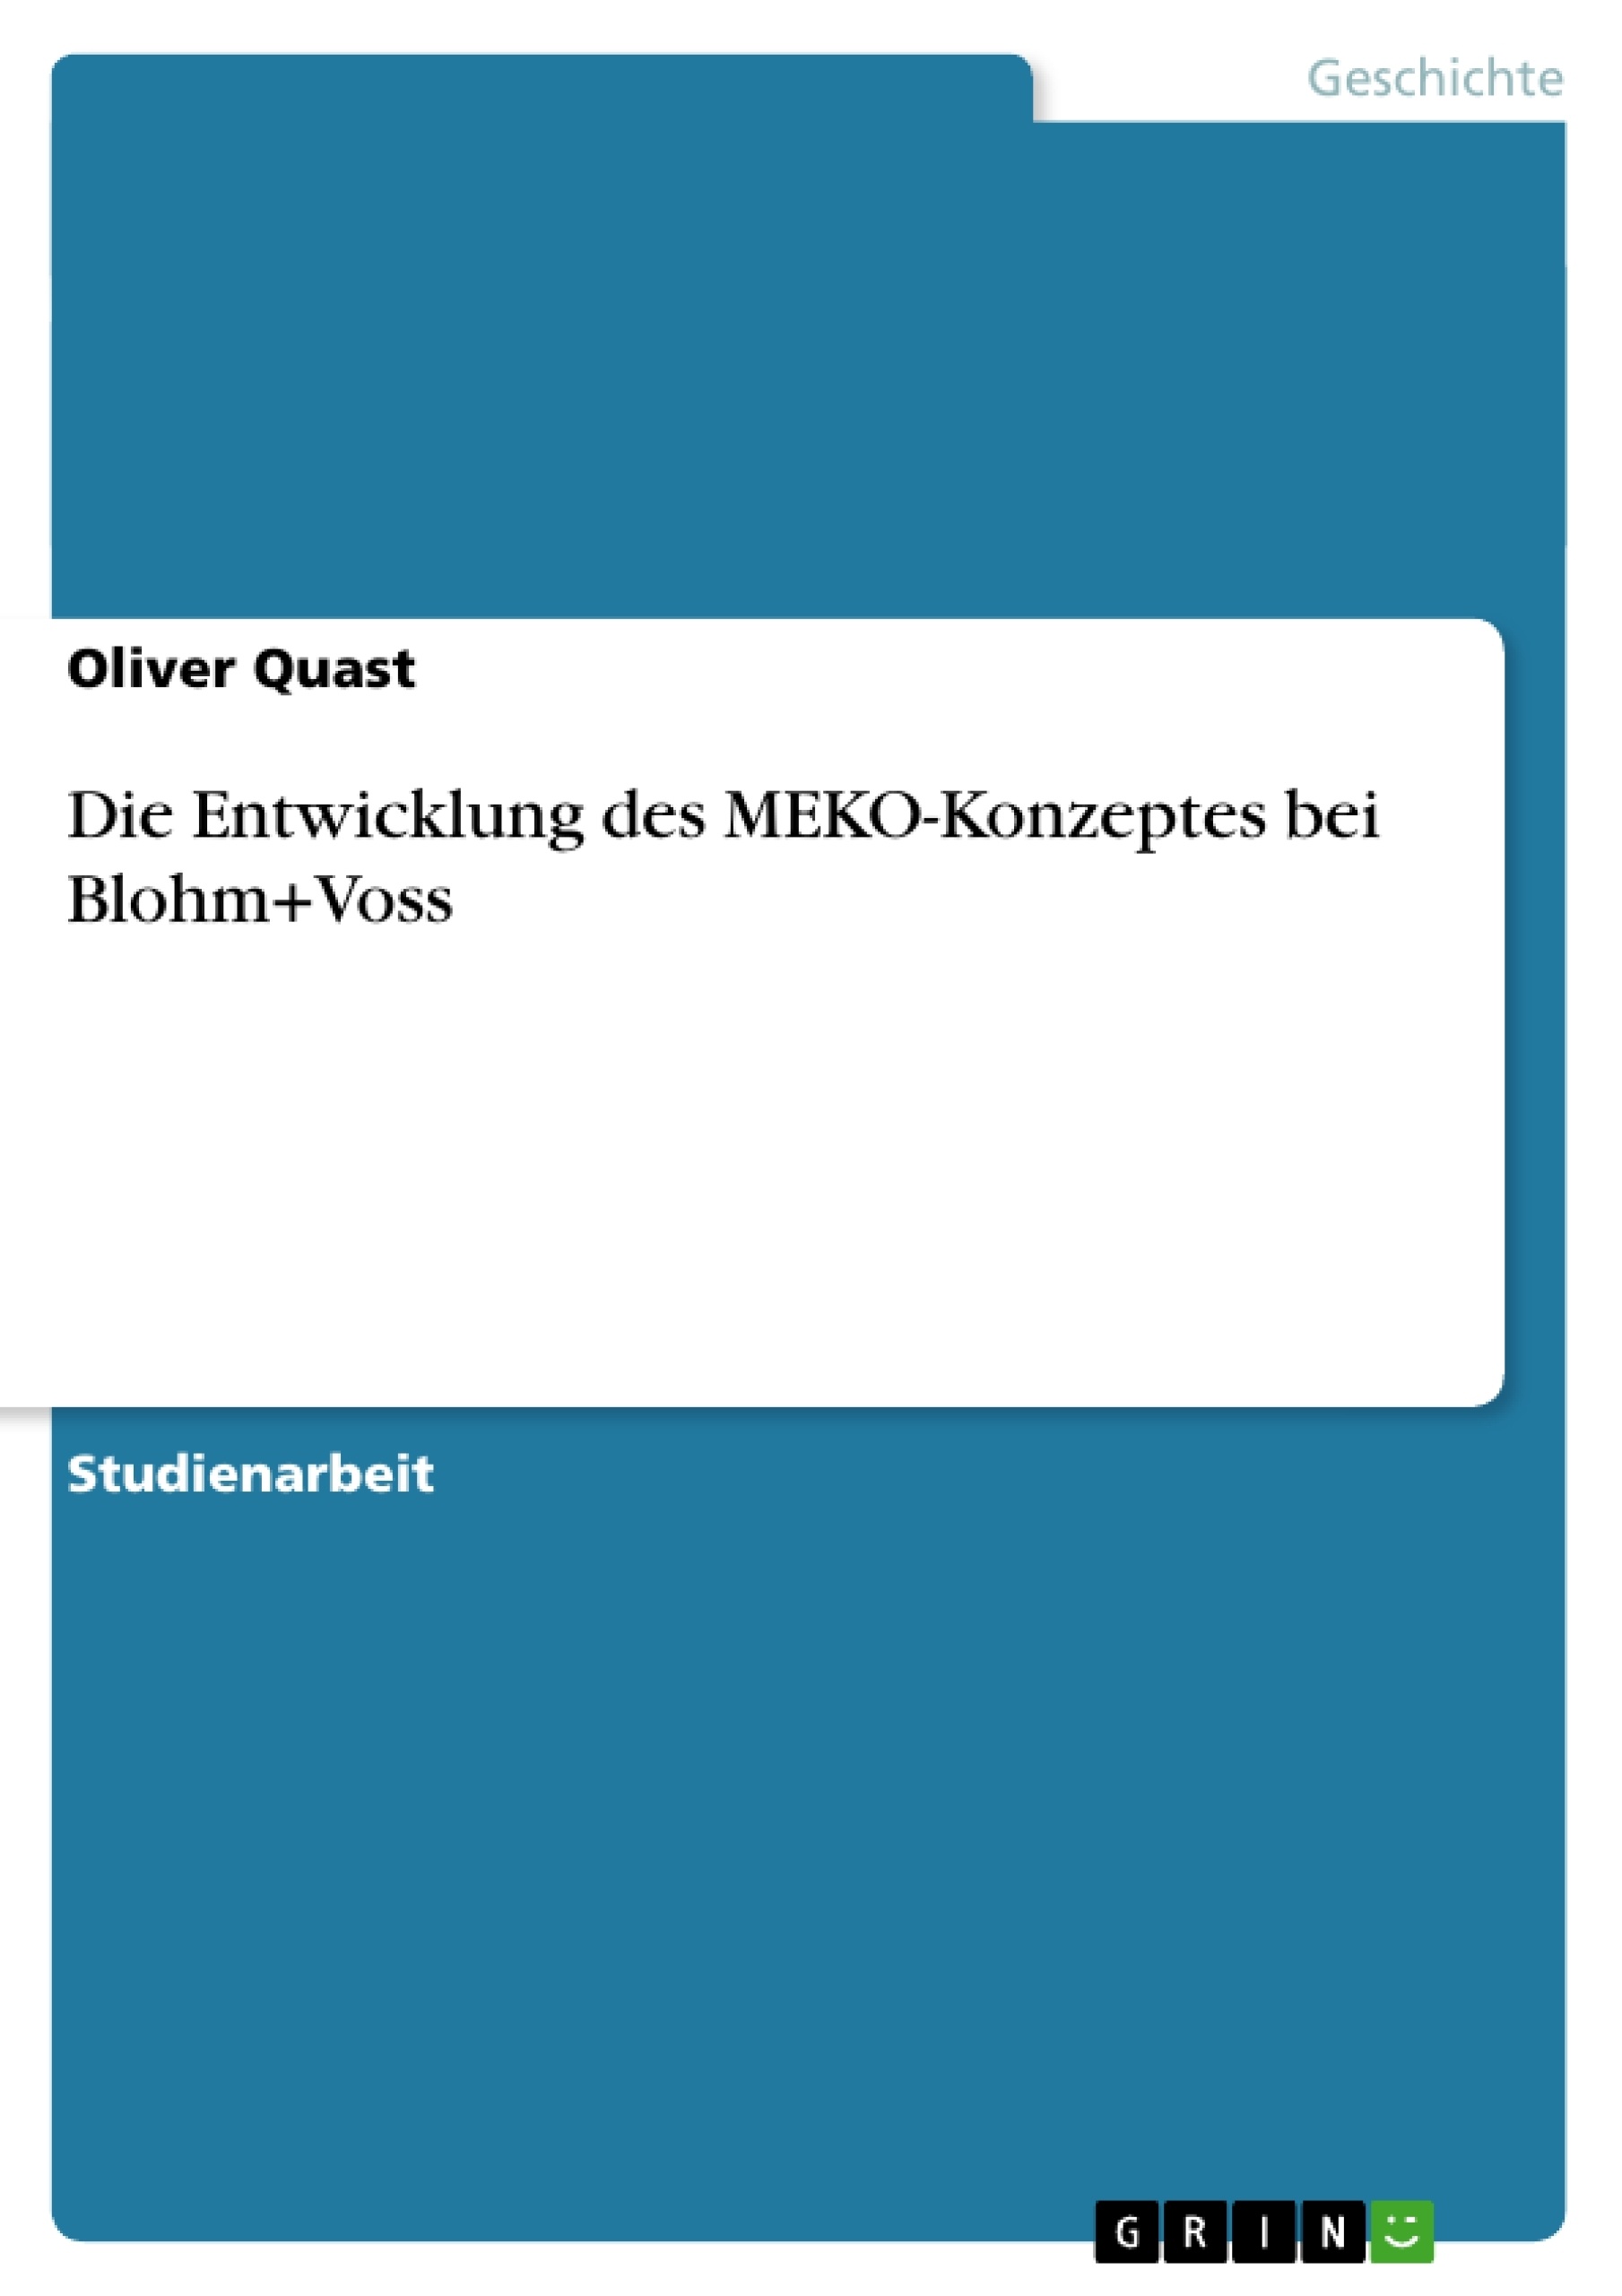 Title: Die Entwicklung des MEKO-Konzeptes bei Blohm+Voss